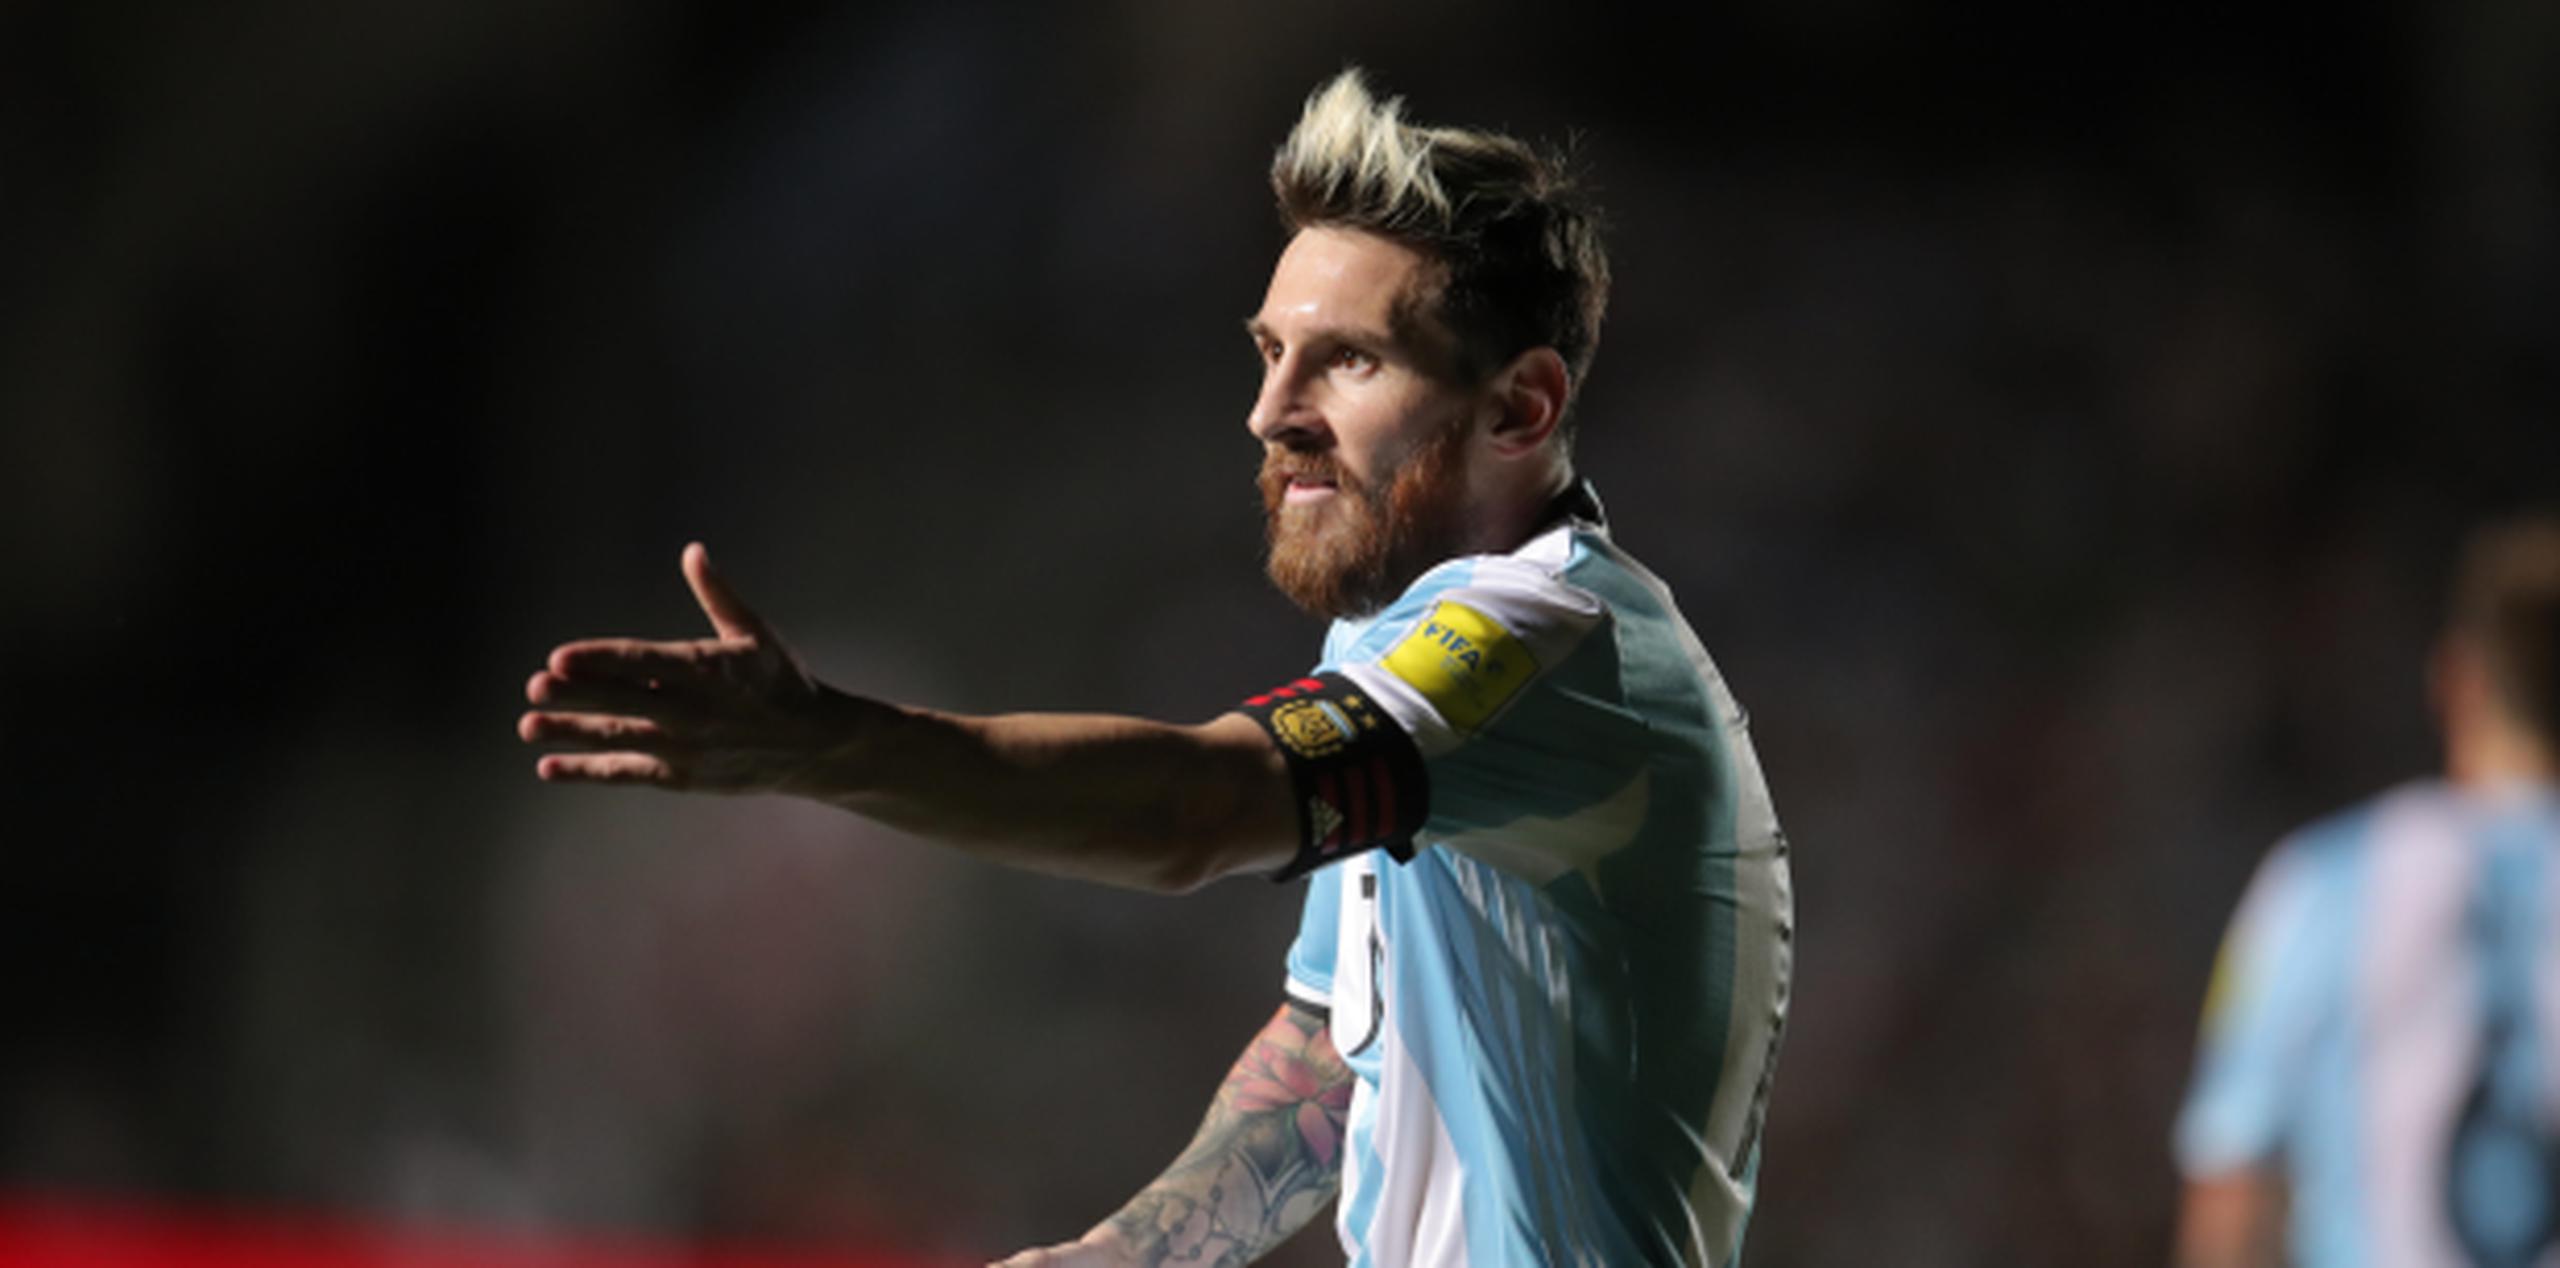 Messi, que fue duramente criticado en Argentina tras perder 3-0 contra Brasil, y luego elogiado tras marcar un golazo de tiro libre y repartir dos asistencias en la victoria 3-0 sobre Colombia, ha sufrido episodios de vómitos en el pasado, jugando con la selección albiceleste. (Archivo)